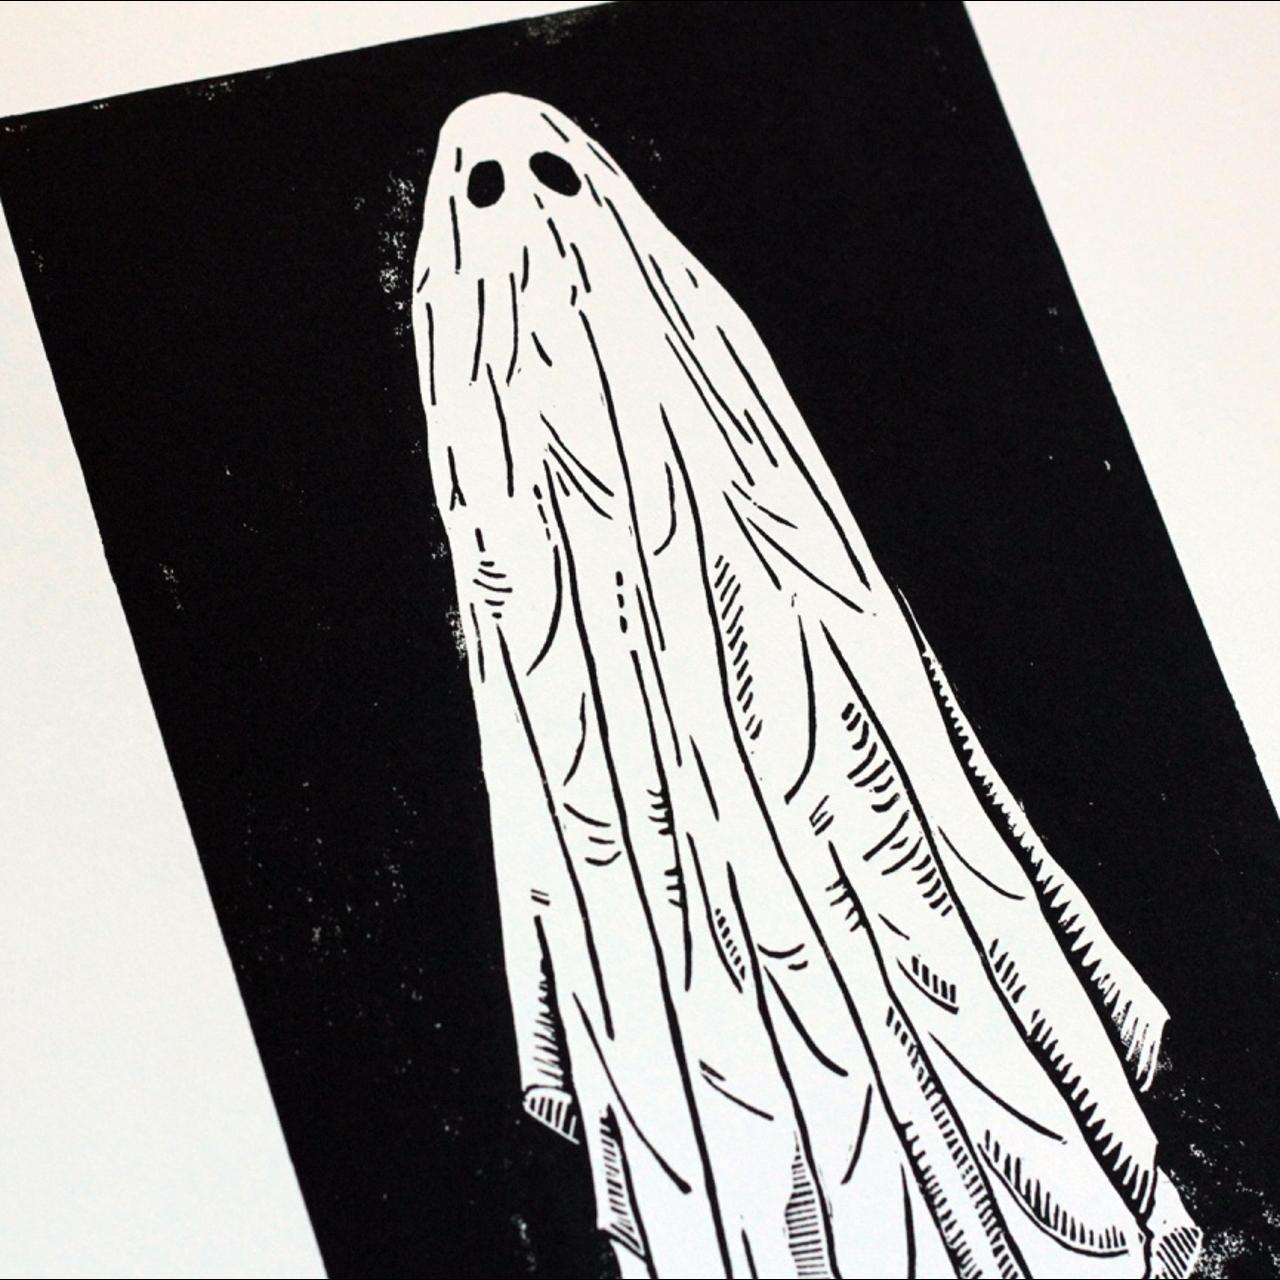 5x7 Unframed Linocut Blockprint Sheet Ghost Print Original Handmade Art Print